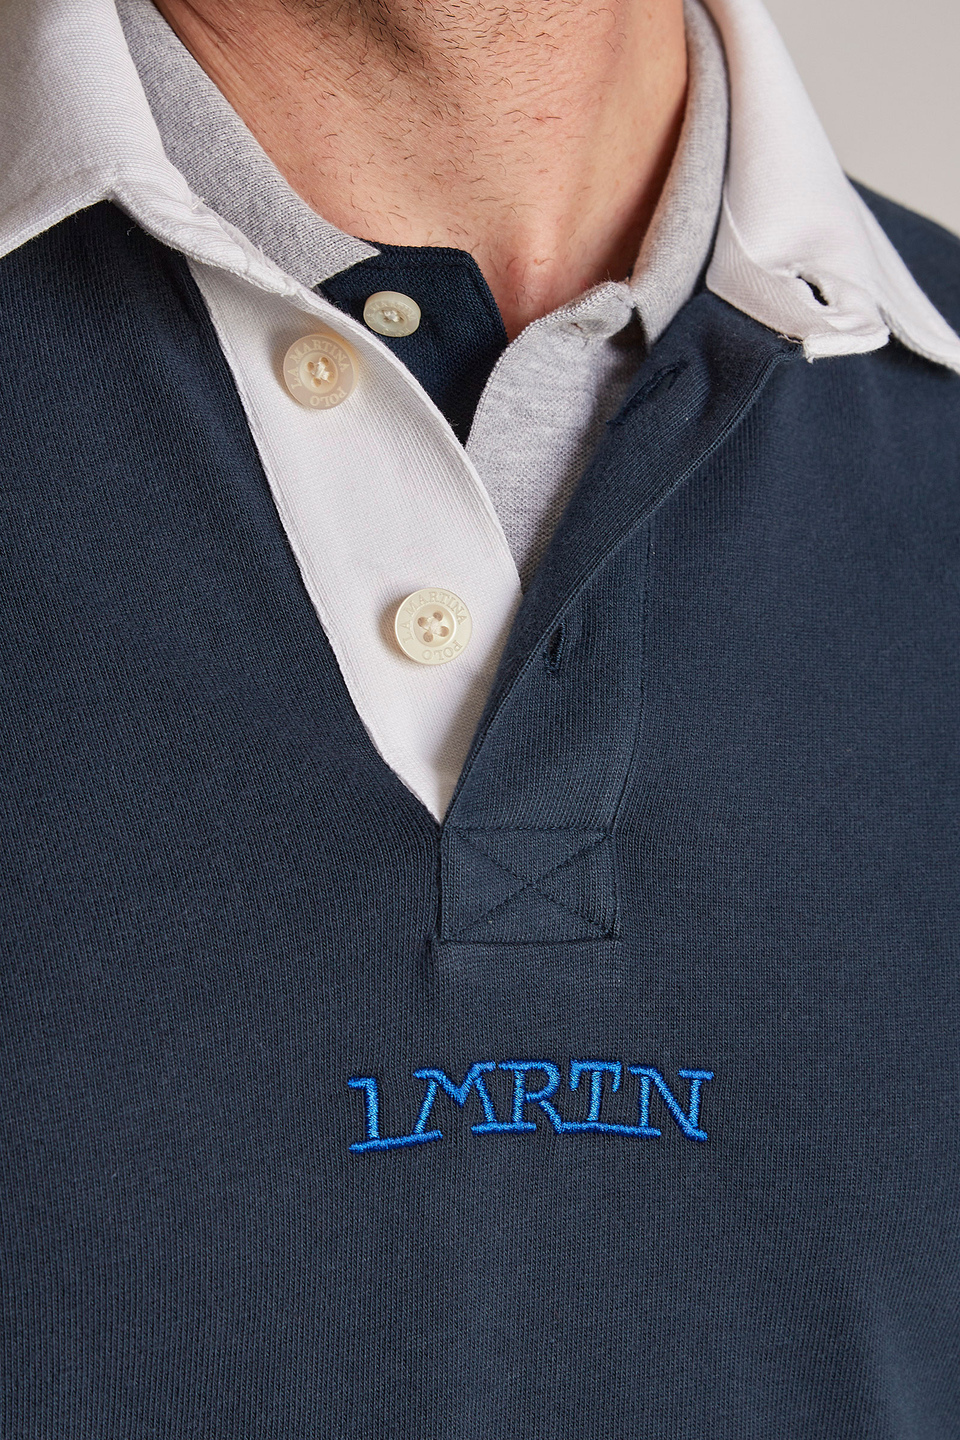 Felpa da uomo in cotone 100% con colletto a contrasto modello over | La Martina - Official Online Shop